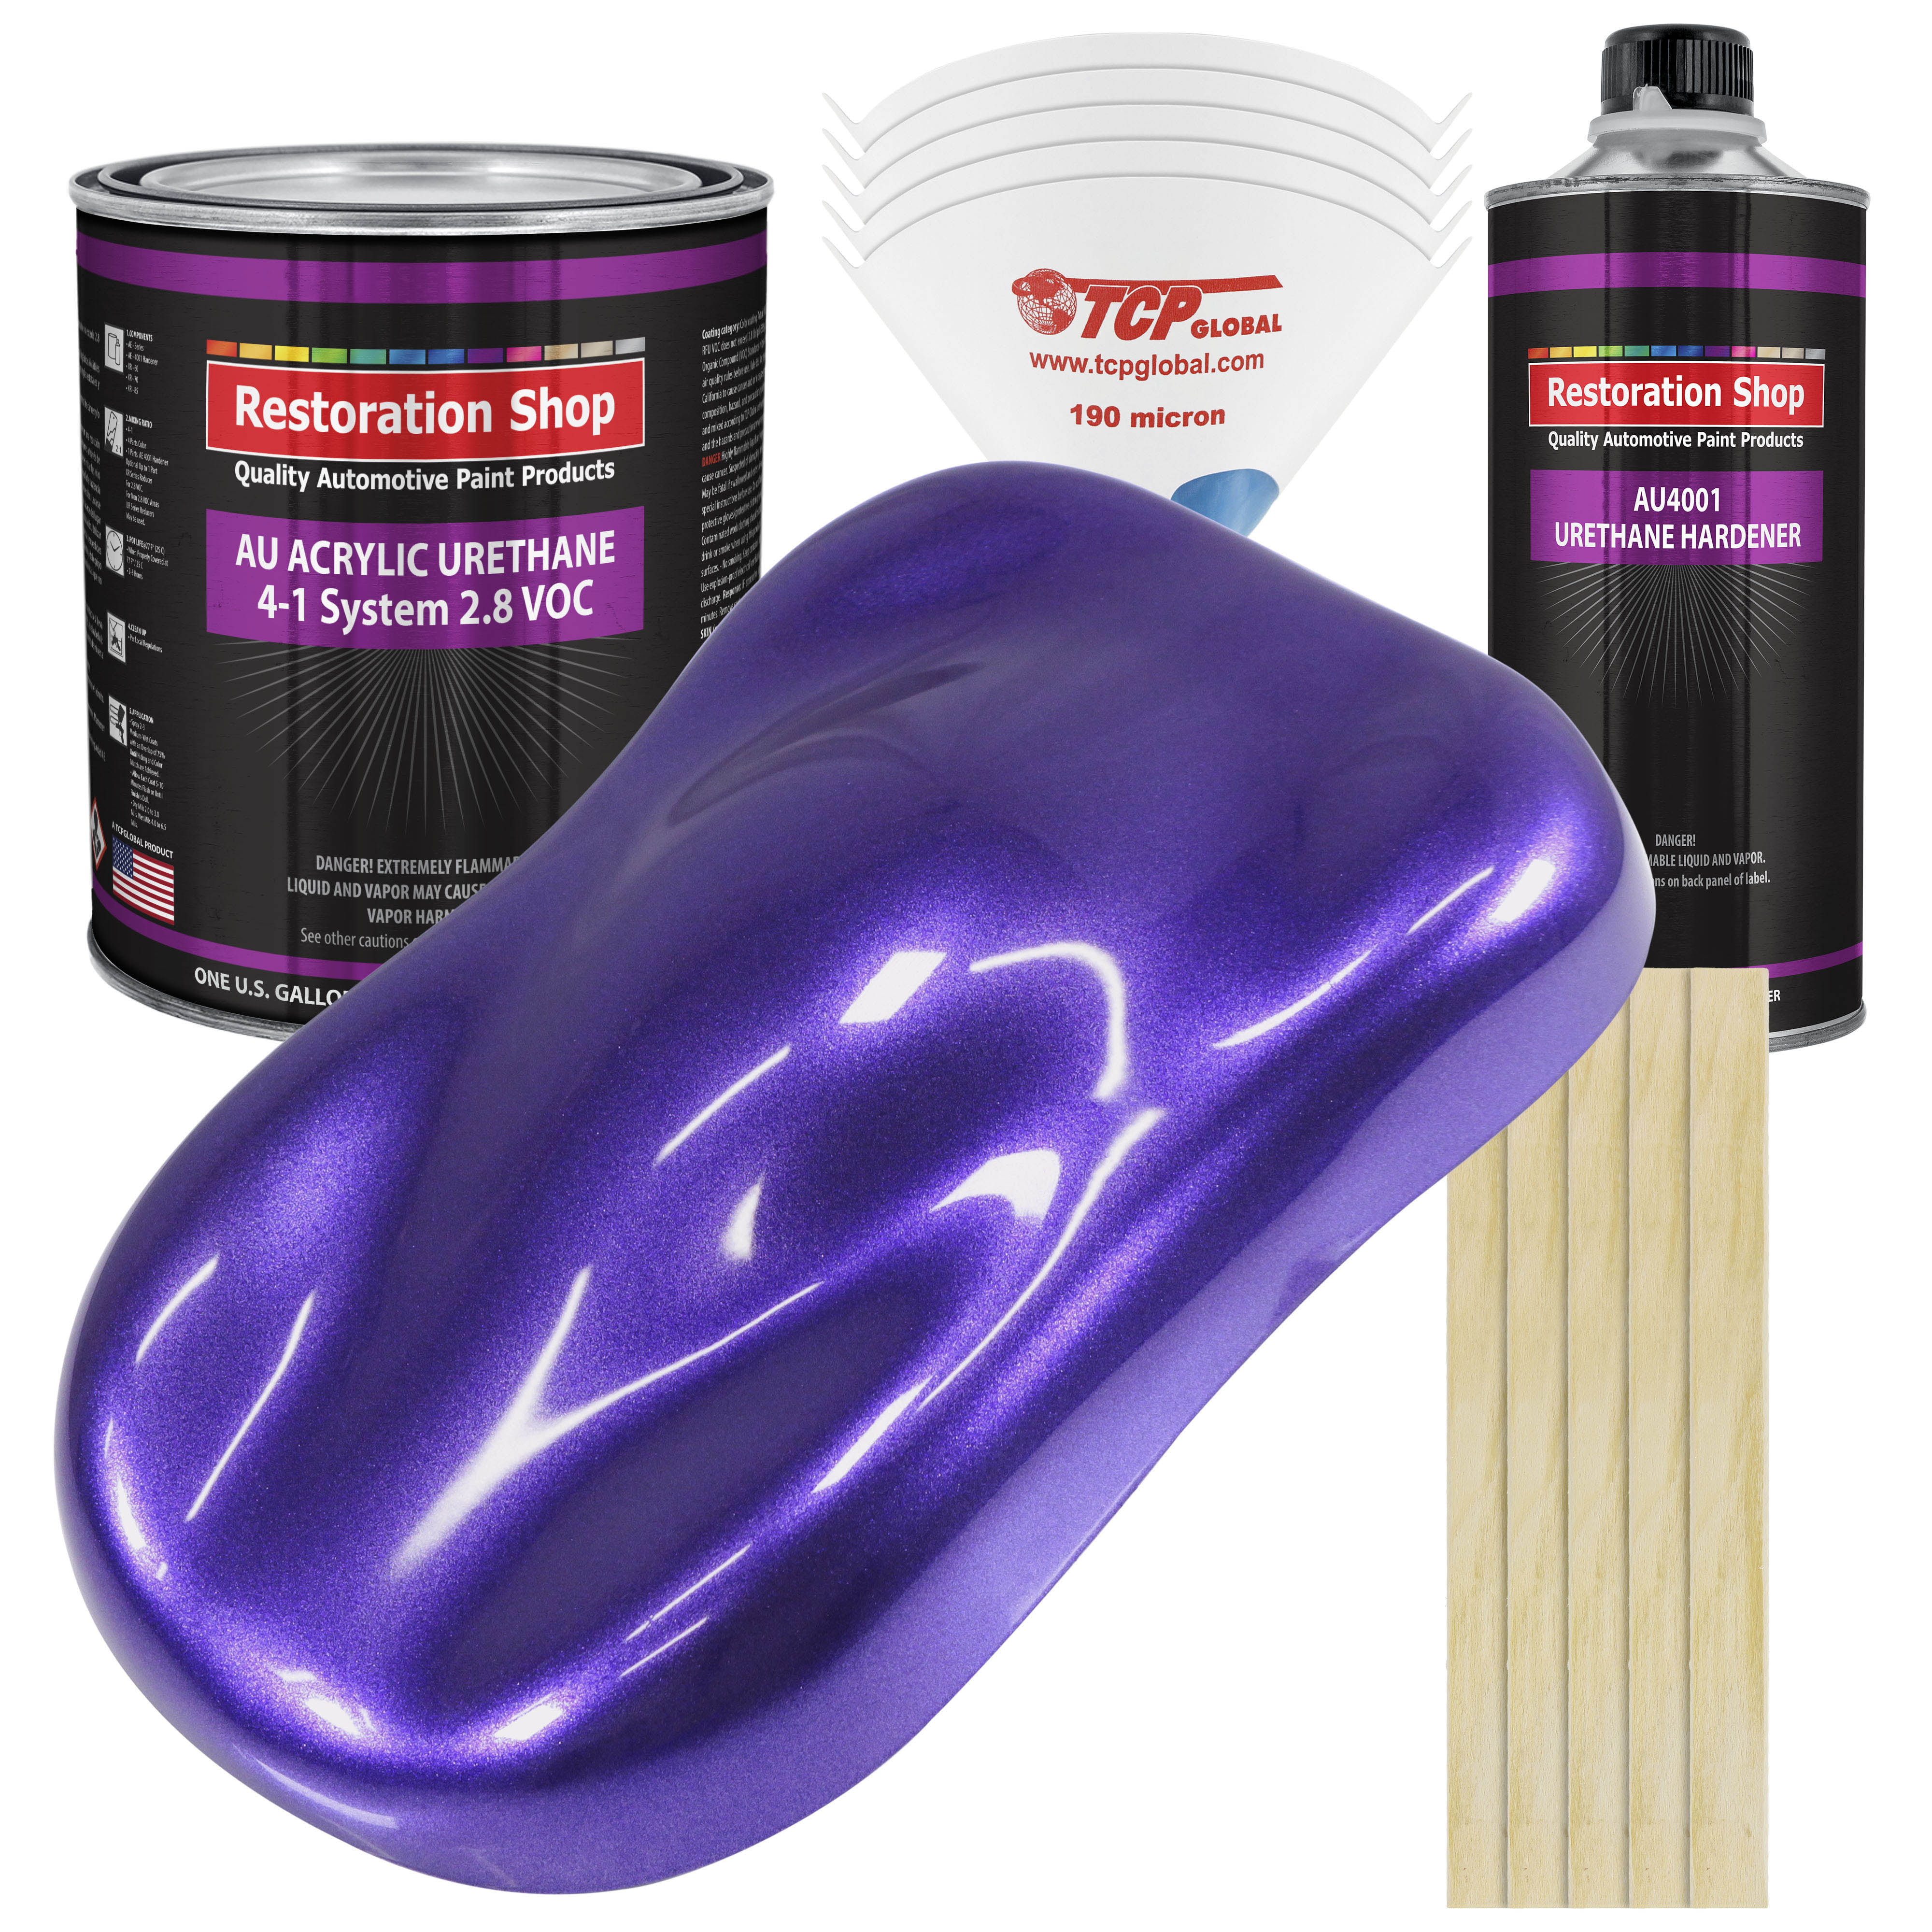 Restoration Shop Firemist Purple Acrylic Urethane Auto Paint Complete